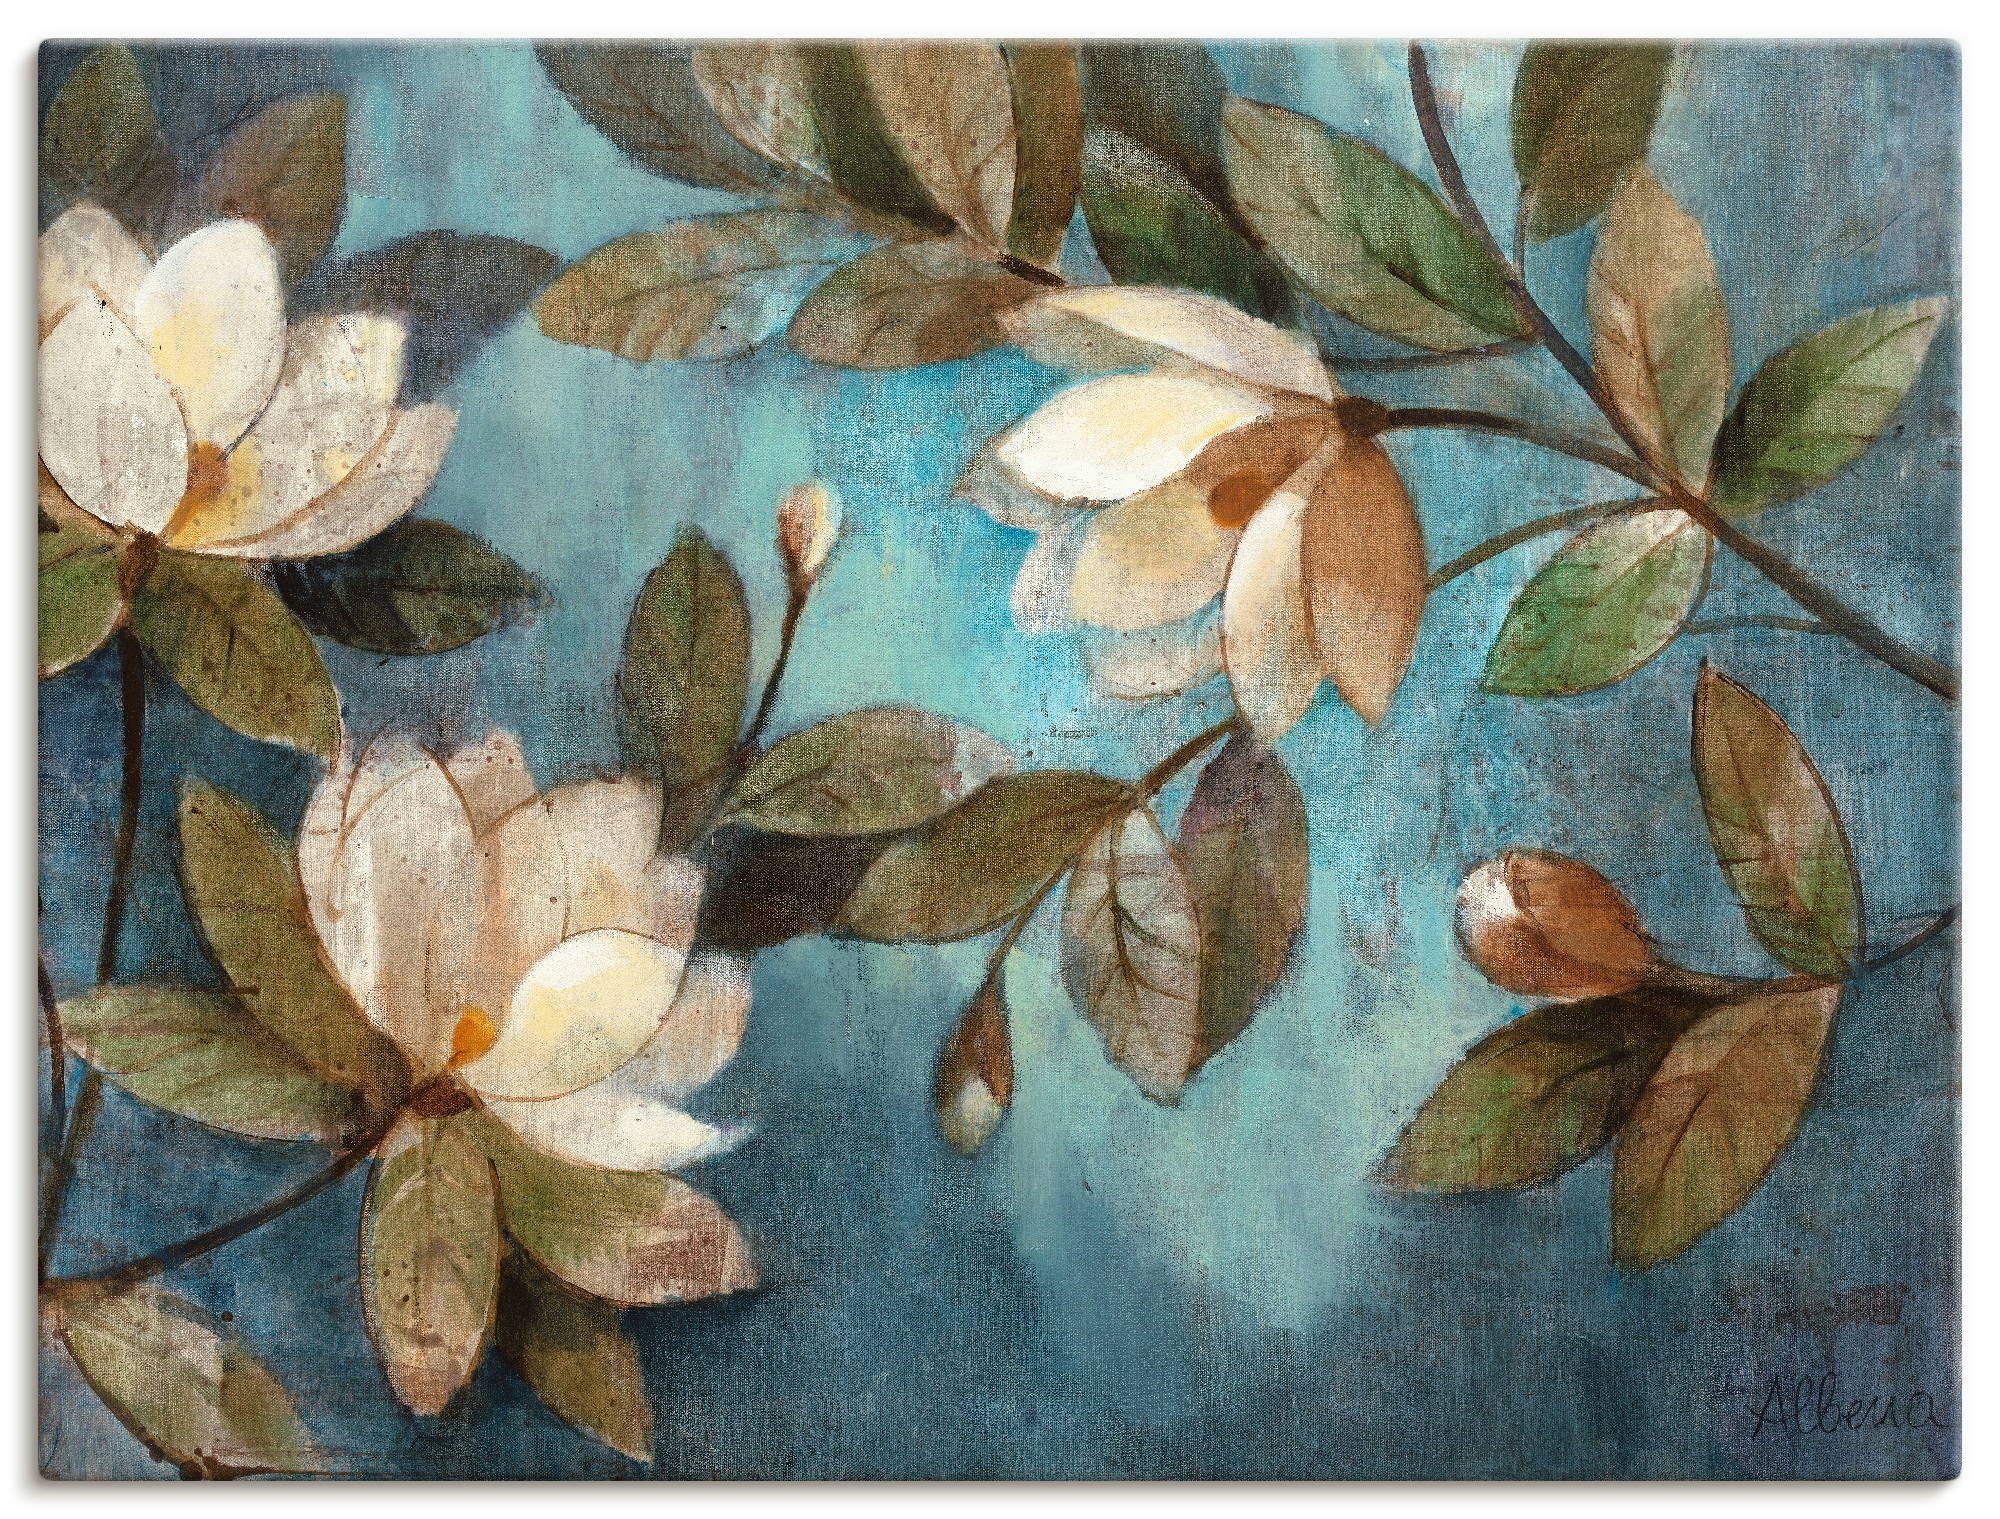 Artland Artprint Zwevende magnolia in vele afmetingen & productsoorten -artprint op linnen, poster, muursticker / wandfolie ook geschikt voor de badkamer (1 stuk)